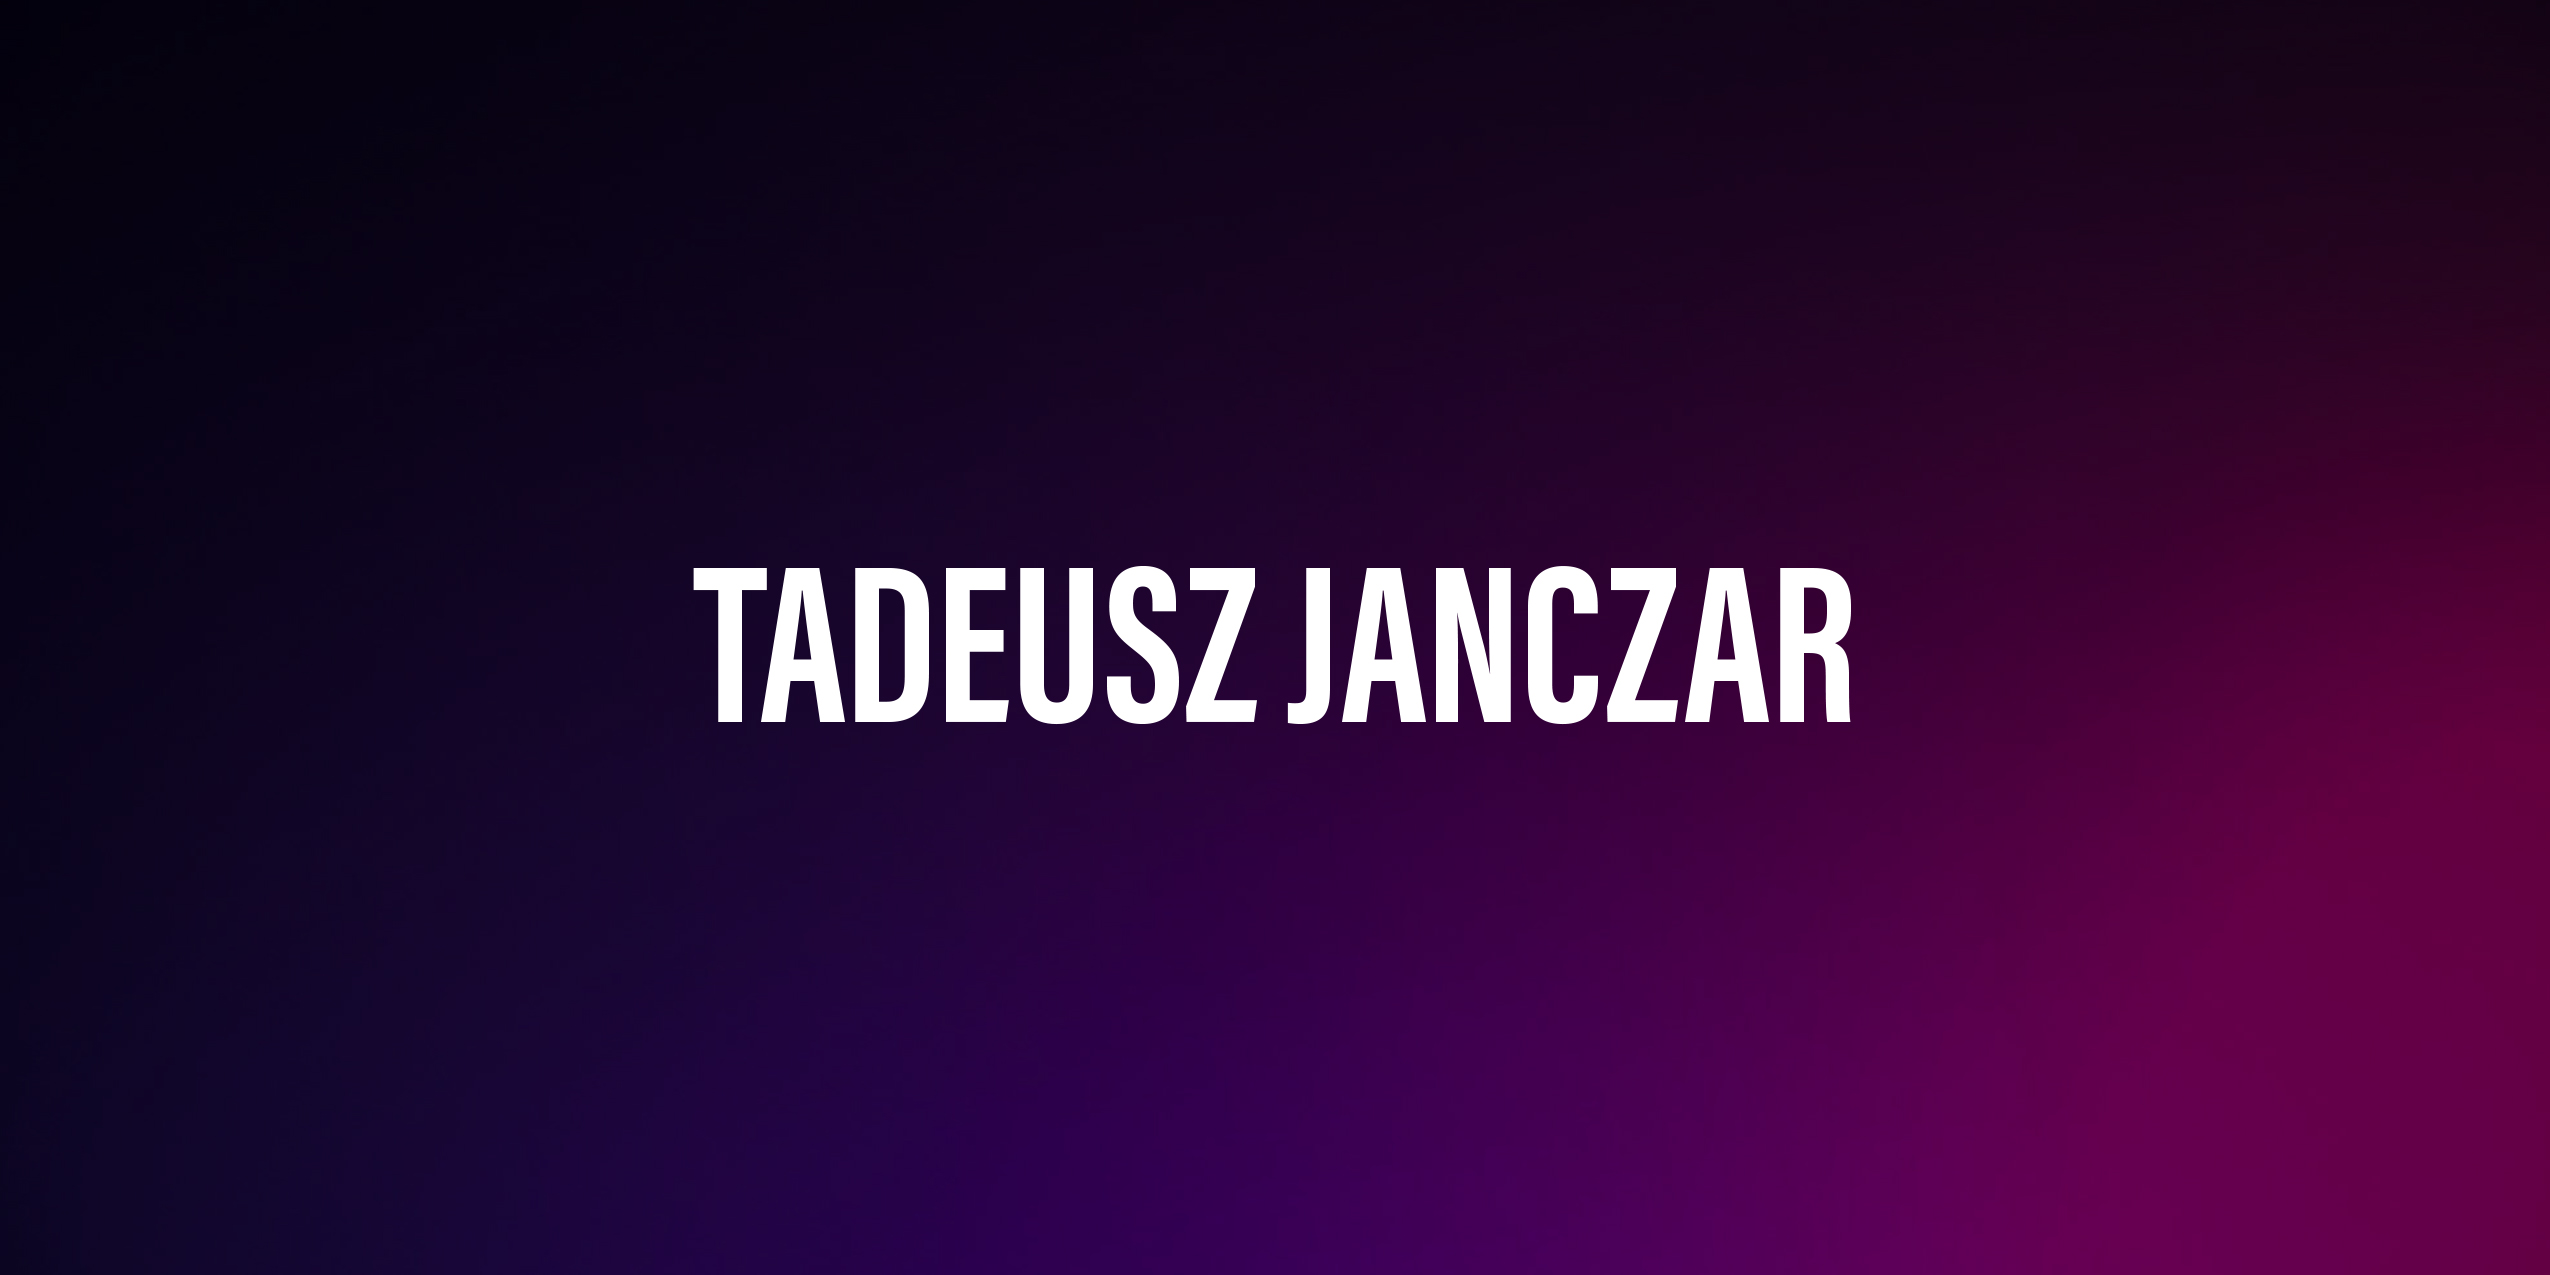 Tadeusz Janczar – życiorys i filmografia